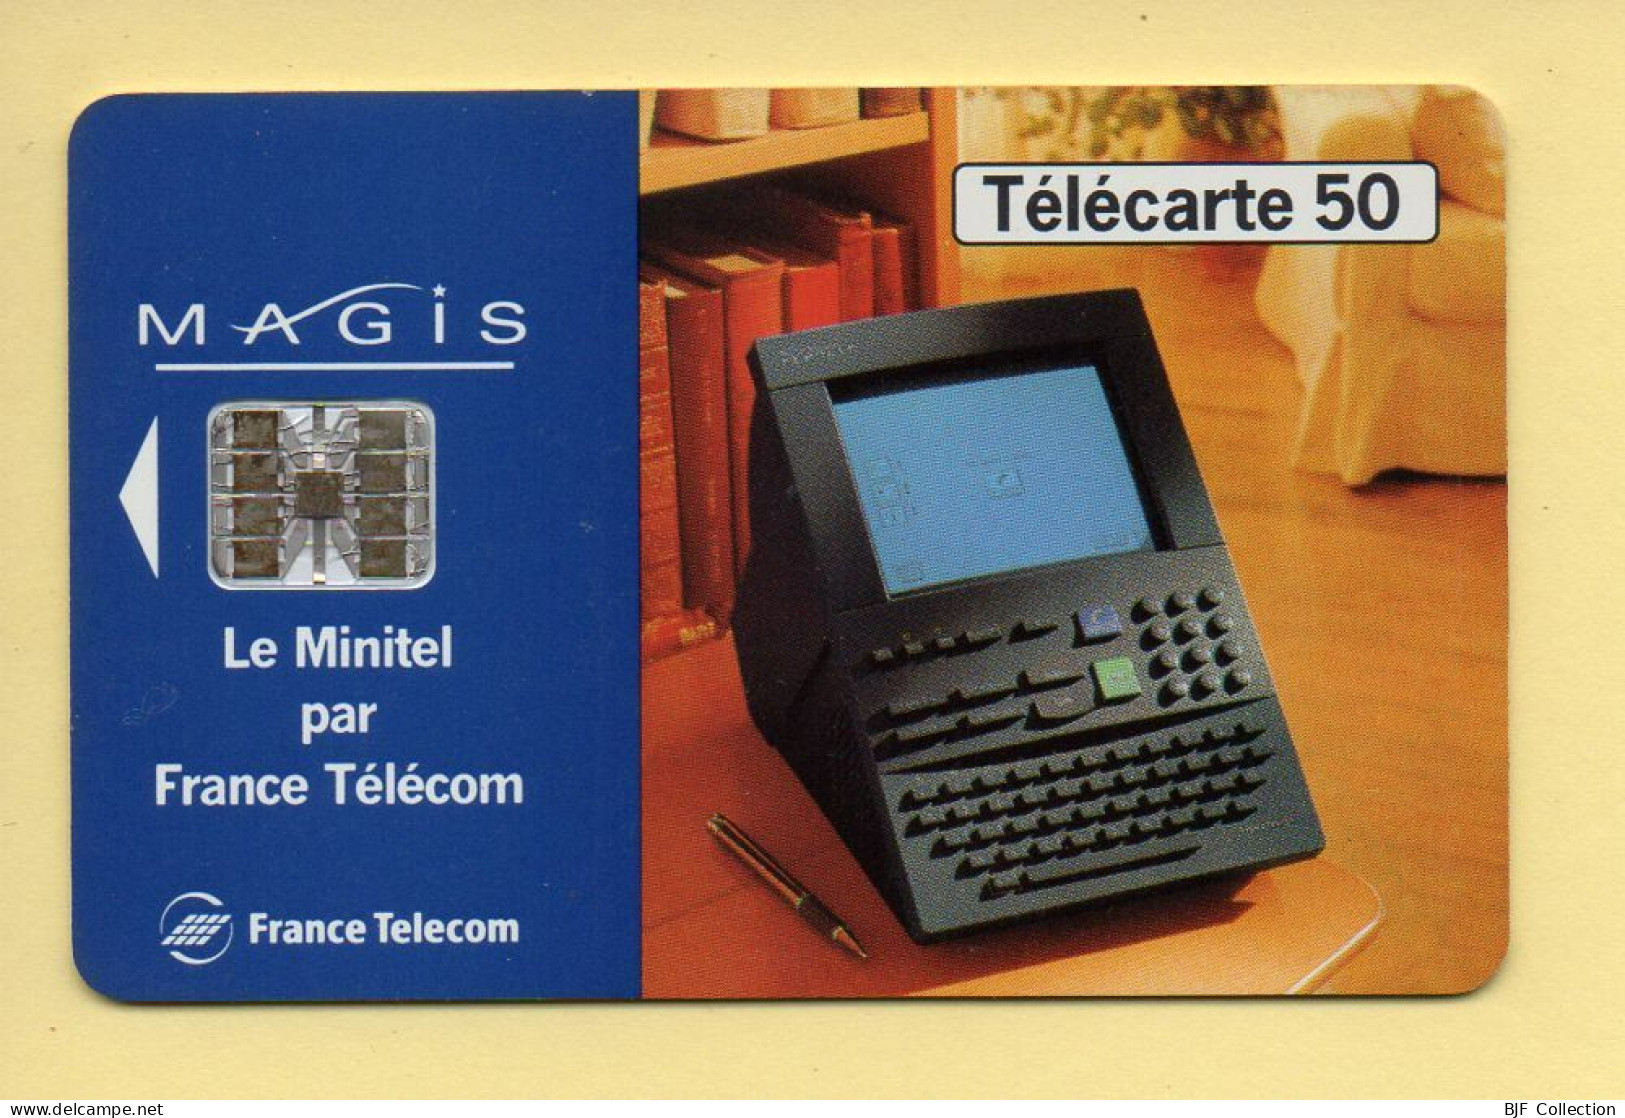 Télécarte 1995 : MAGIS GRIS / 50 Unités / 07-95 (voir Puce Et Numéro Au Dos) - 1995